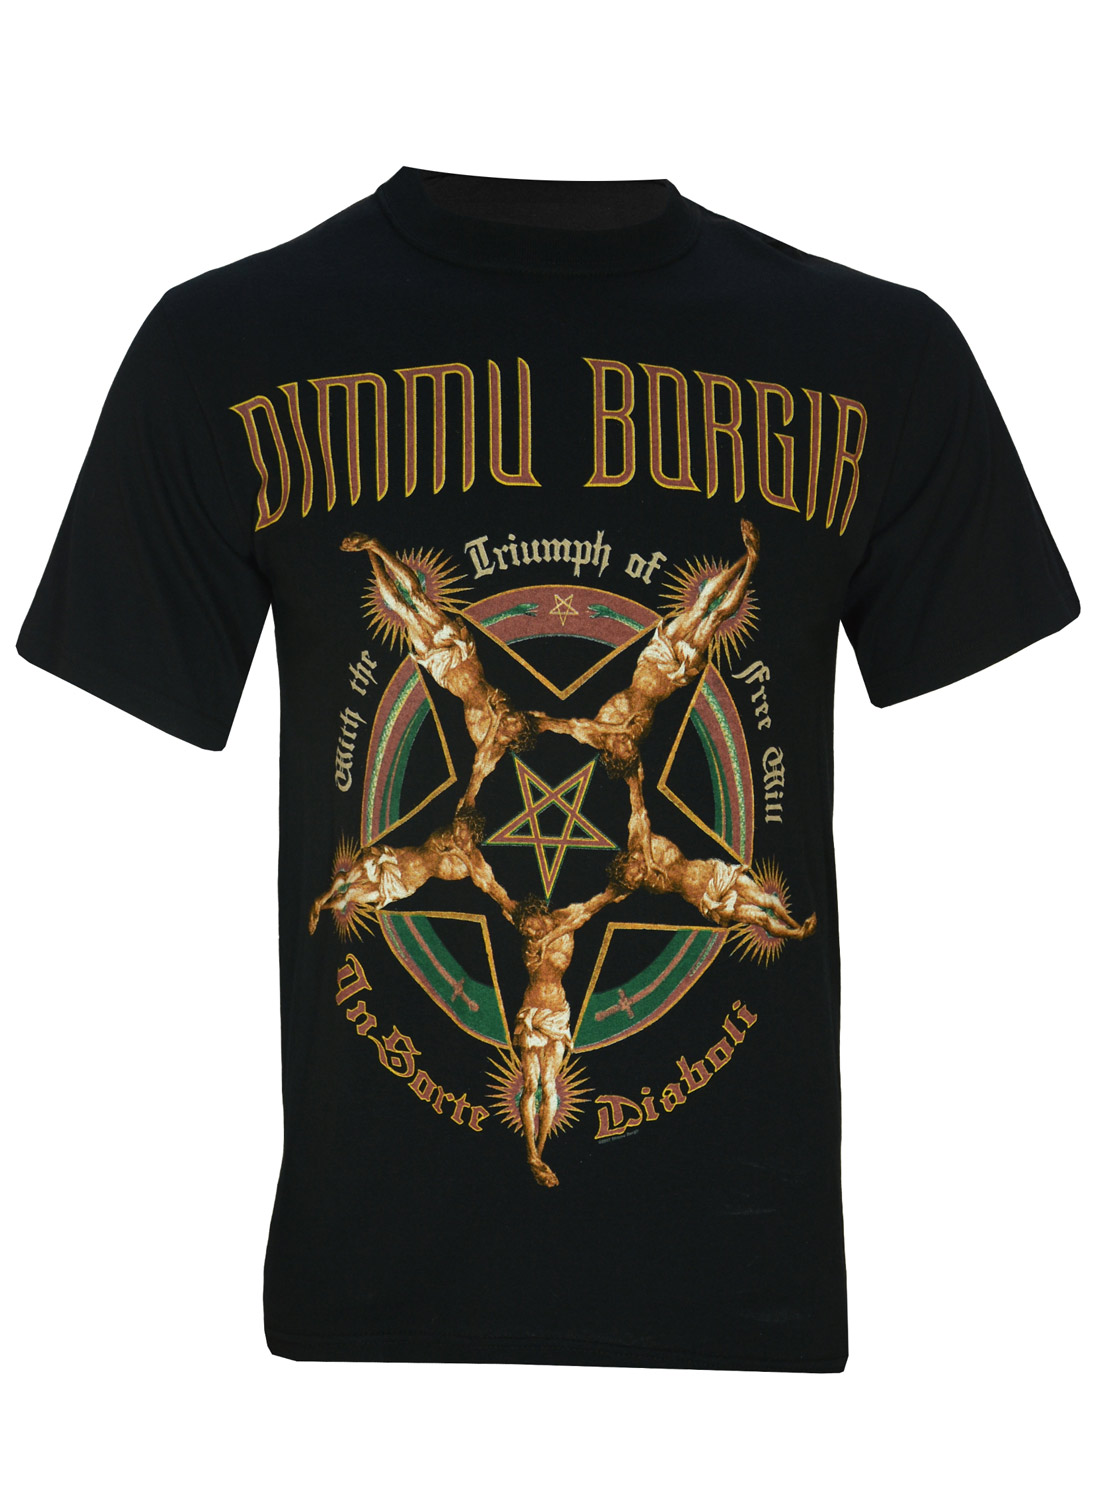 Dimmu Borgir Triumph of Free Will T-shirt